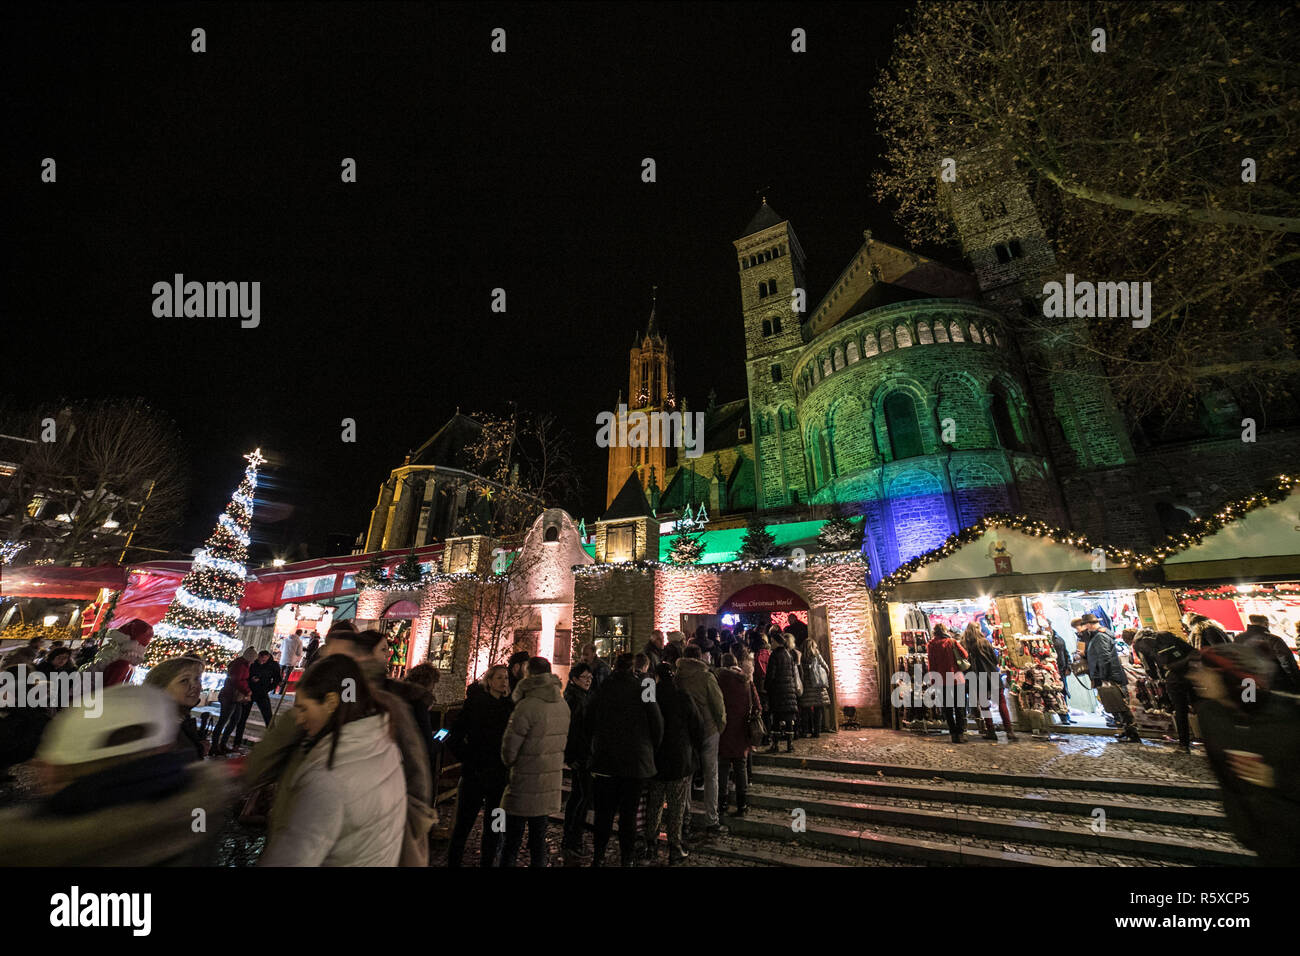 Aux Pays-Bas. 1er décembre 2018. Les lumières de Noël et décorations vu à la magie du marché de Noël 2018 de Maastricht en Maastricht ville des Pays-Bas est un marché de Noël avec beaucoup d'événements, petits magasins, GlÃ¼hwein ou bougie vin chaud, les lumières dans les arbres, carrousel, patinoire, Santa's house, glisser et un Ferris dans une ambiance festive qui attirent beaucoup de visiteurs en provenance des Pays-Bas, l'Allemagne et plus loin. Elle a lieu du 1er décembre au 31 décembre 2018. Crédit : Nicolas Economou SOPA/Images/ZUMA/Alamy Fil Live News Banque D'Images